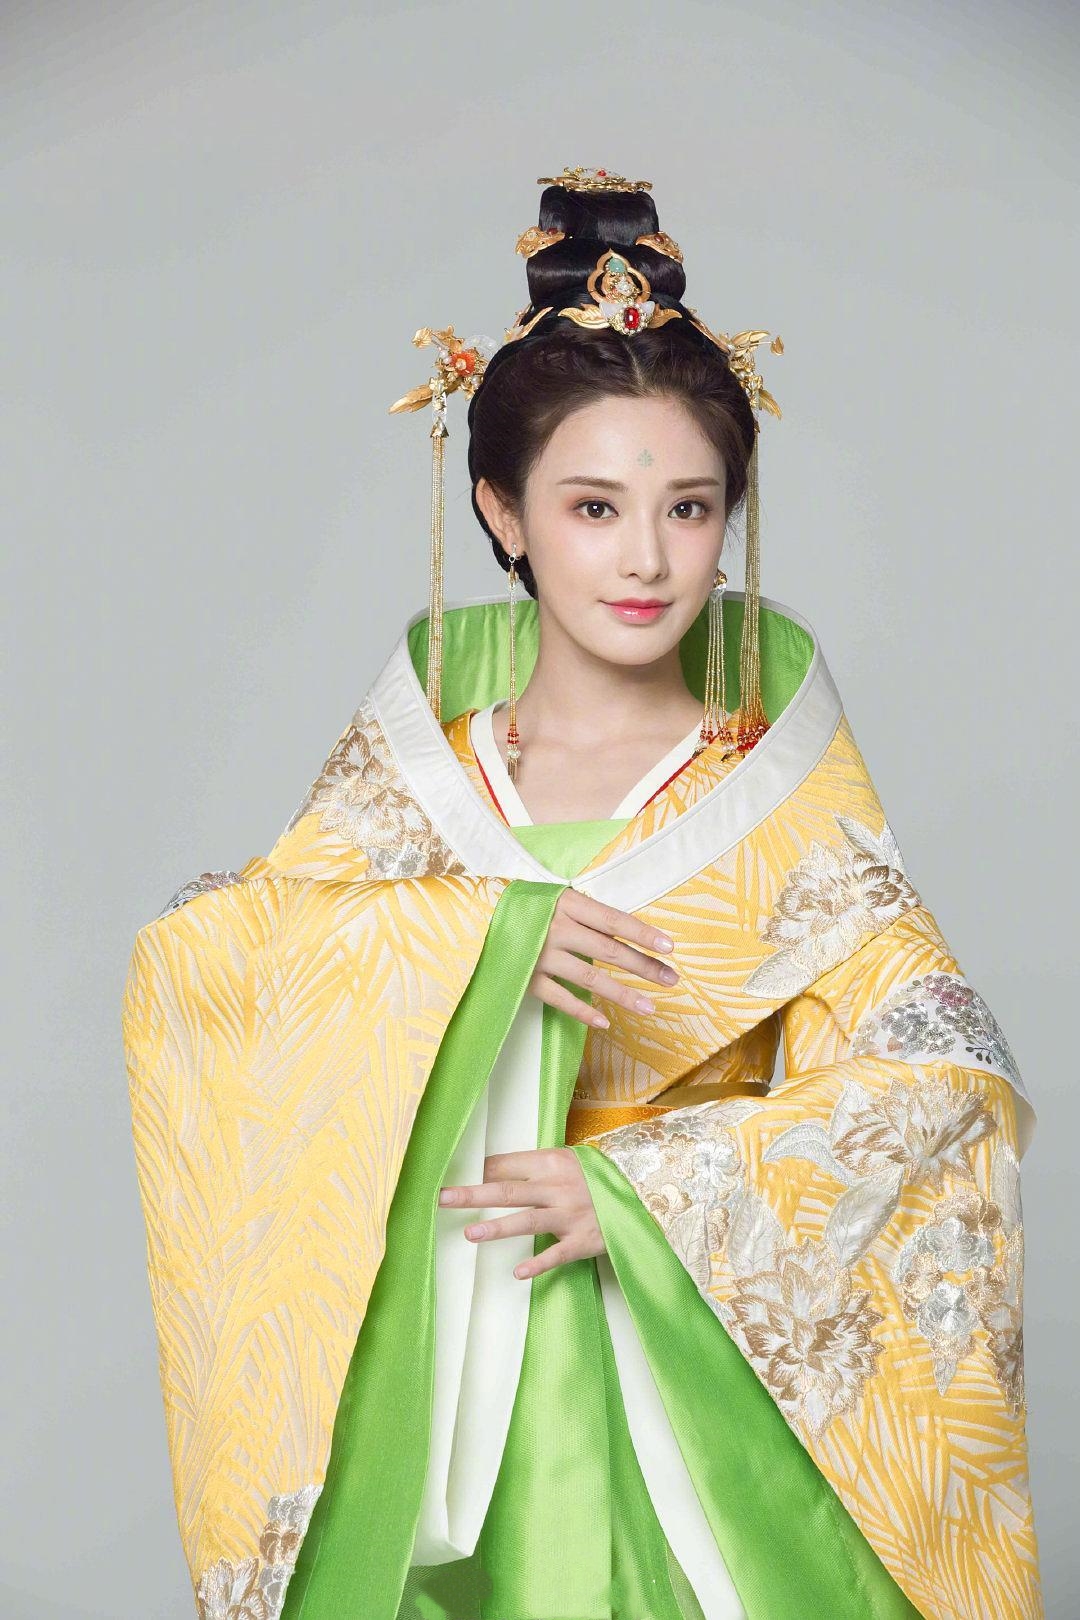 也就是小枫身为太子妃的正装服饰,不同于其他衣服,这一套服饰穿在小枫